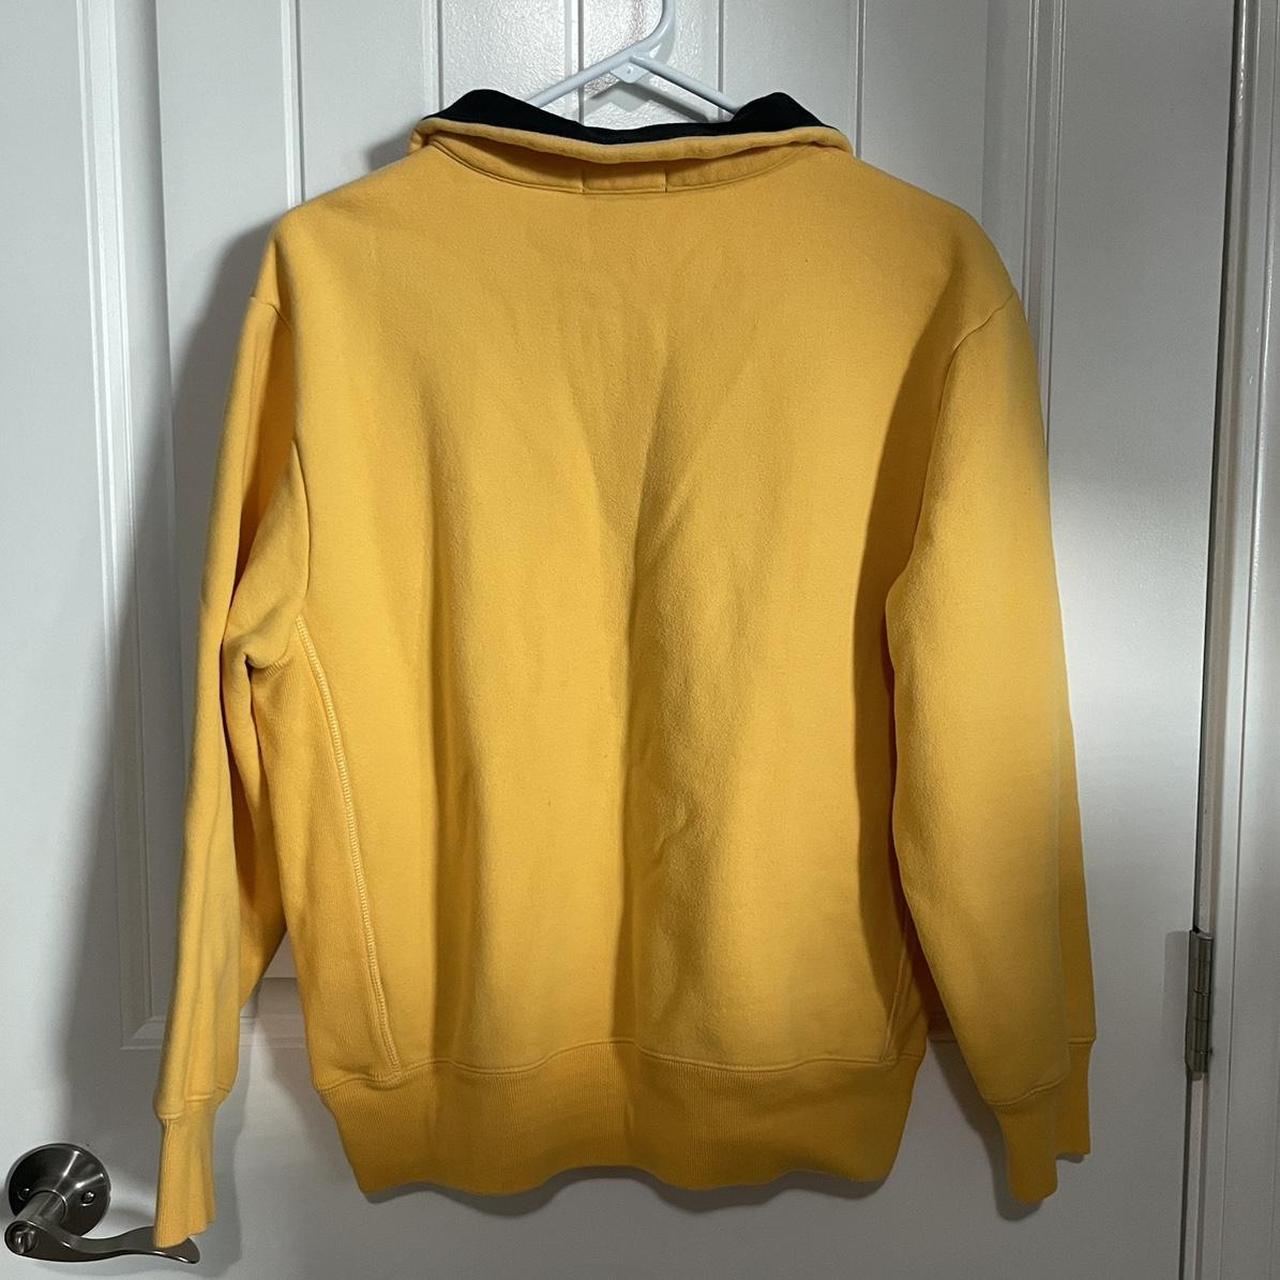 Nautica Men's Yellow and Navy Sweatshirt (2)